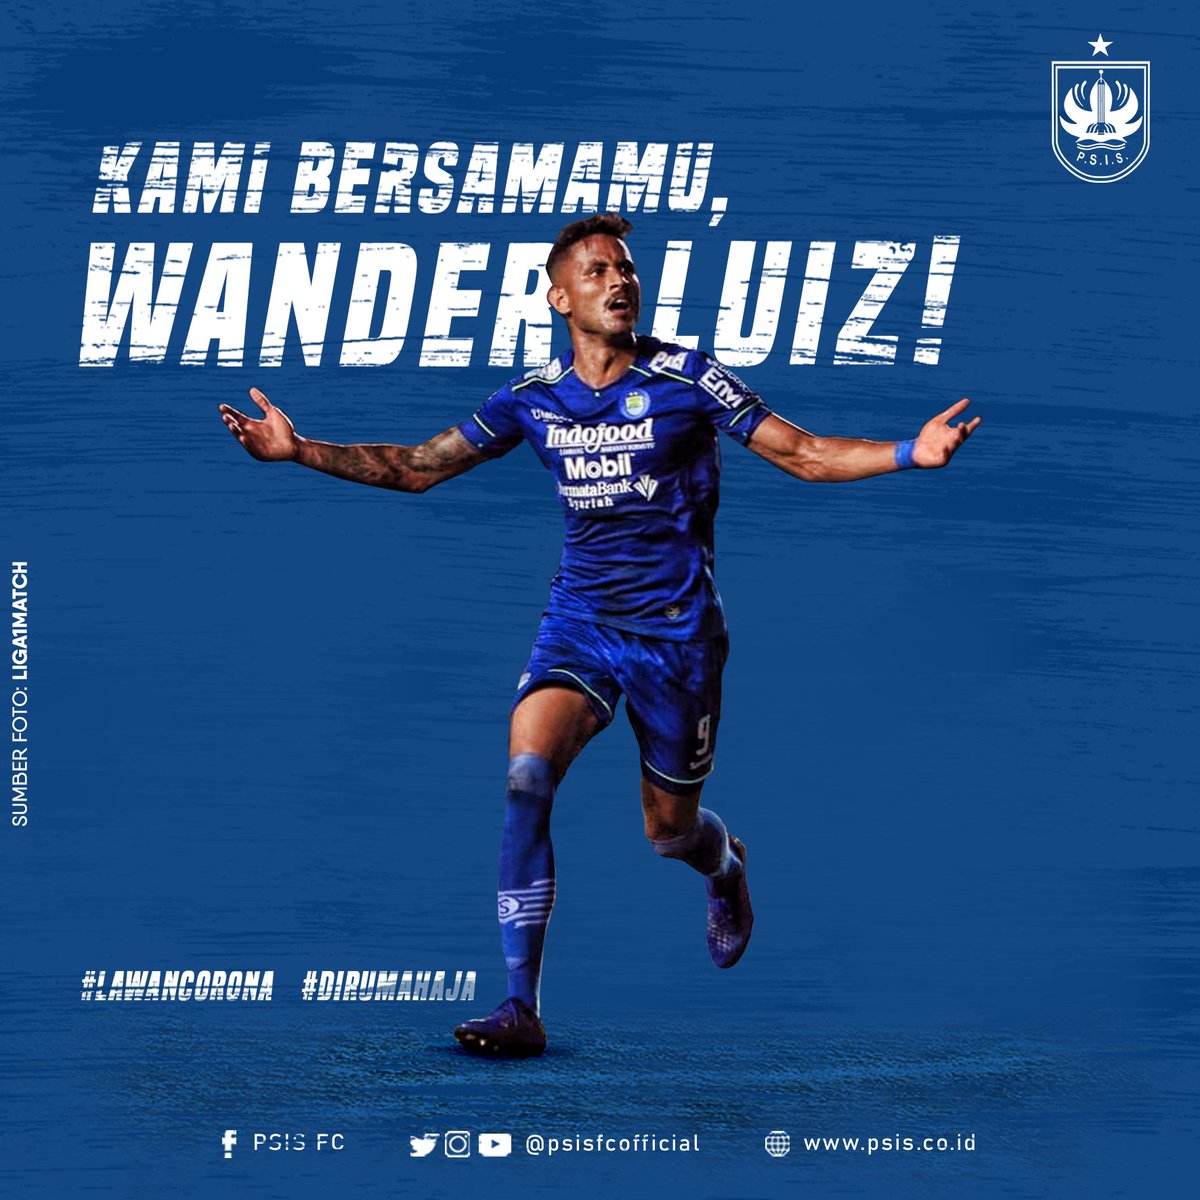 Kami bersamamu Wander Luiz! 
Seluruh elemen PSIS Semarang ikut mendoakan kesembuhan dari striker @persib, Wander Luiz yang terindikasi positif COVID-19. Segera pulih teman! 💙💙💙

#PSIS #YohIsoYoh #KitaBersaudara #LawanCorona #dirumahaja